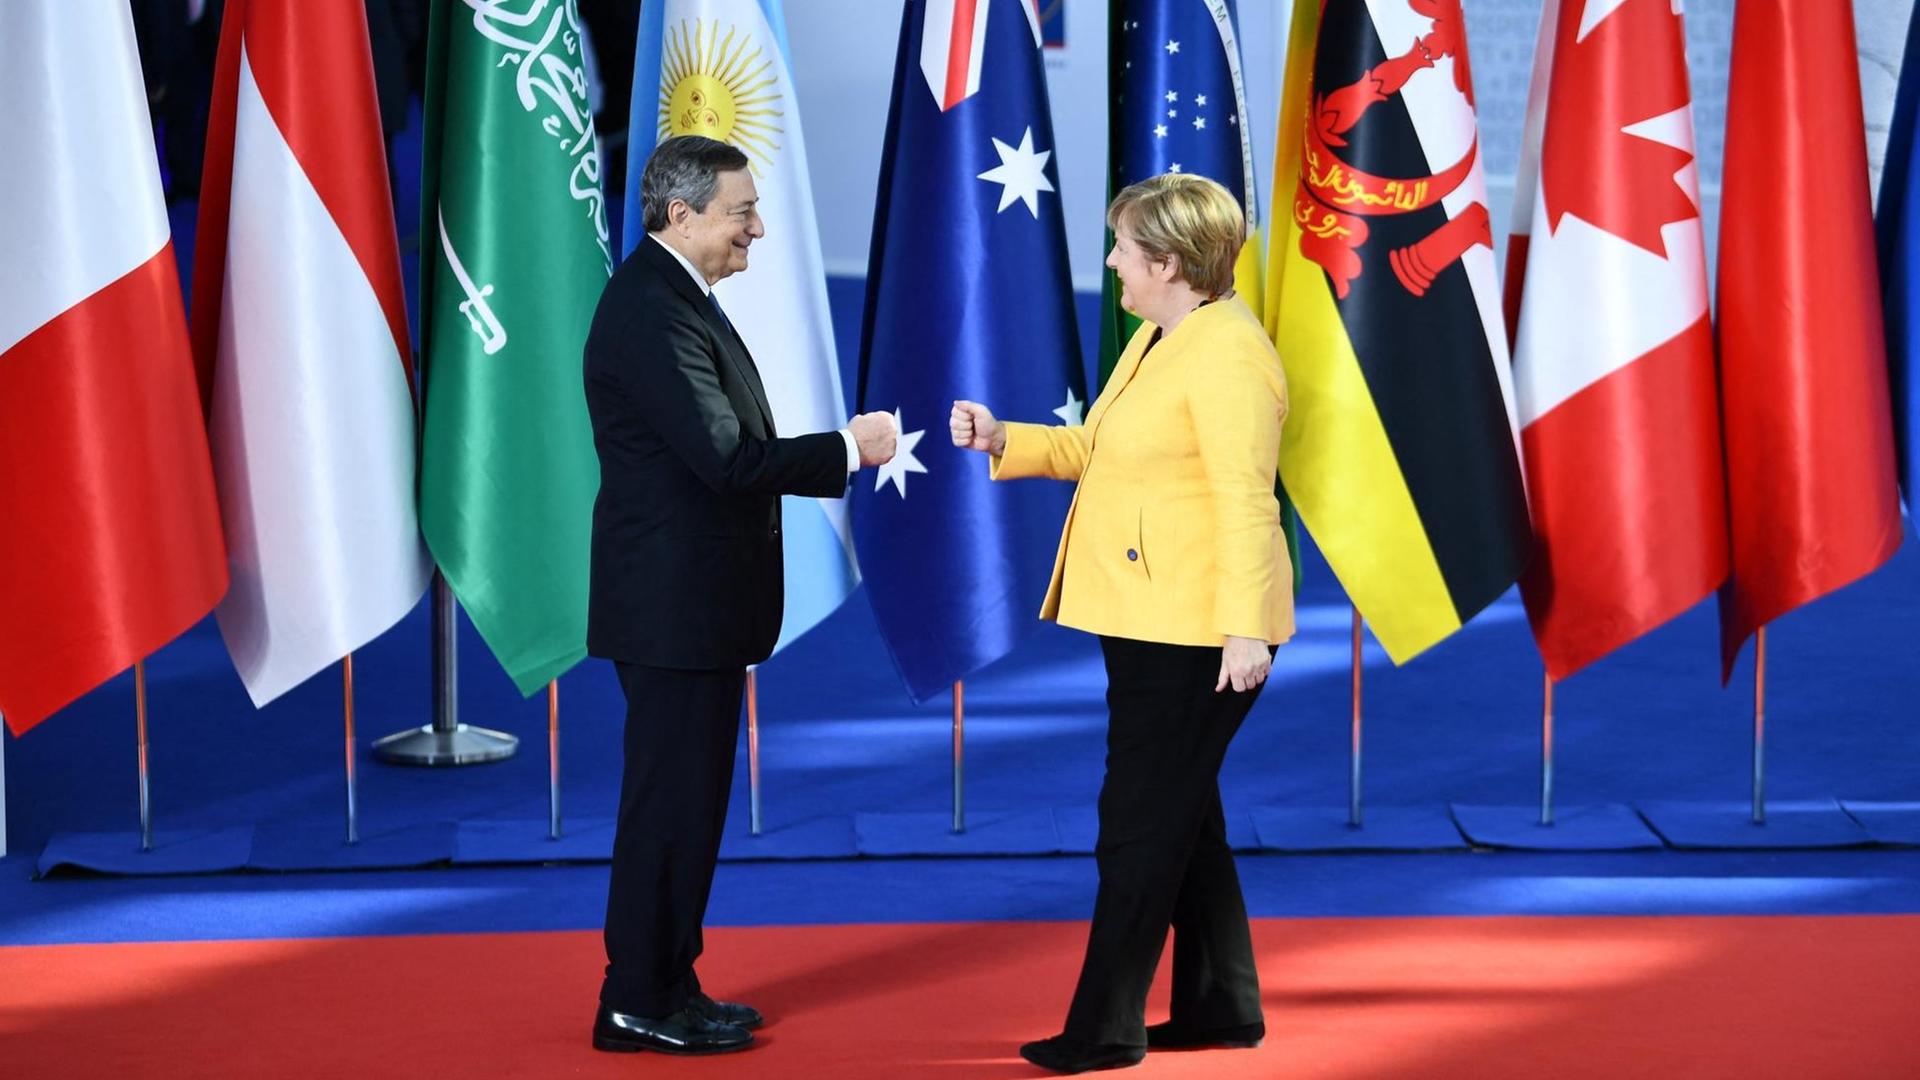 Draghi und Merkel geben sich die Hand. Hinter ihnen stehen die Fahnen von den G-20-Ländern.